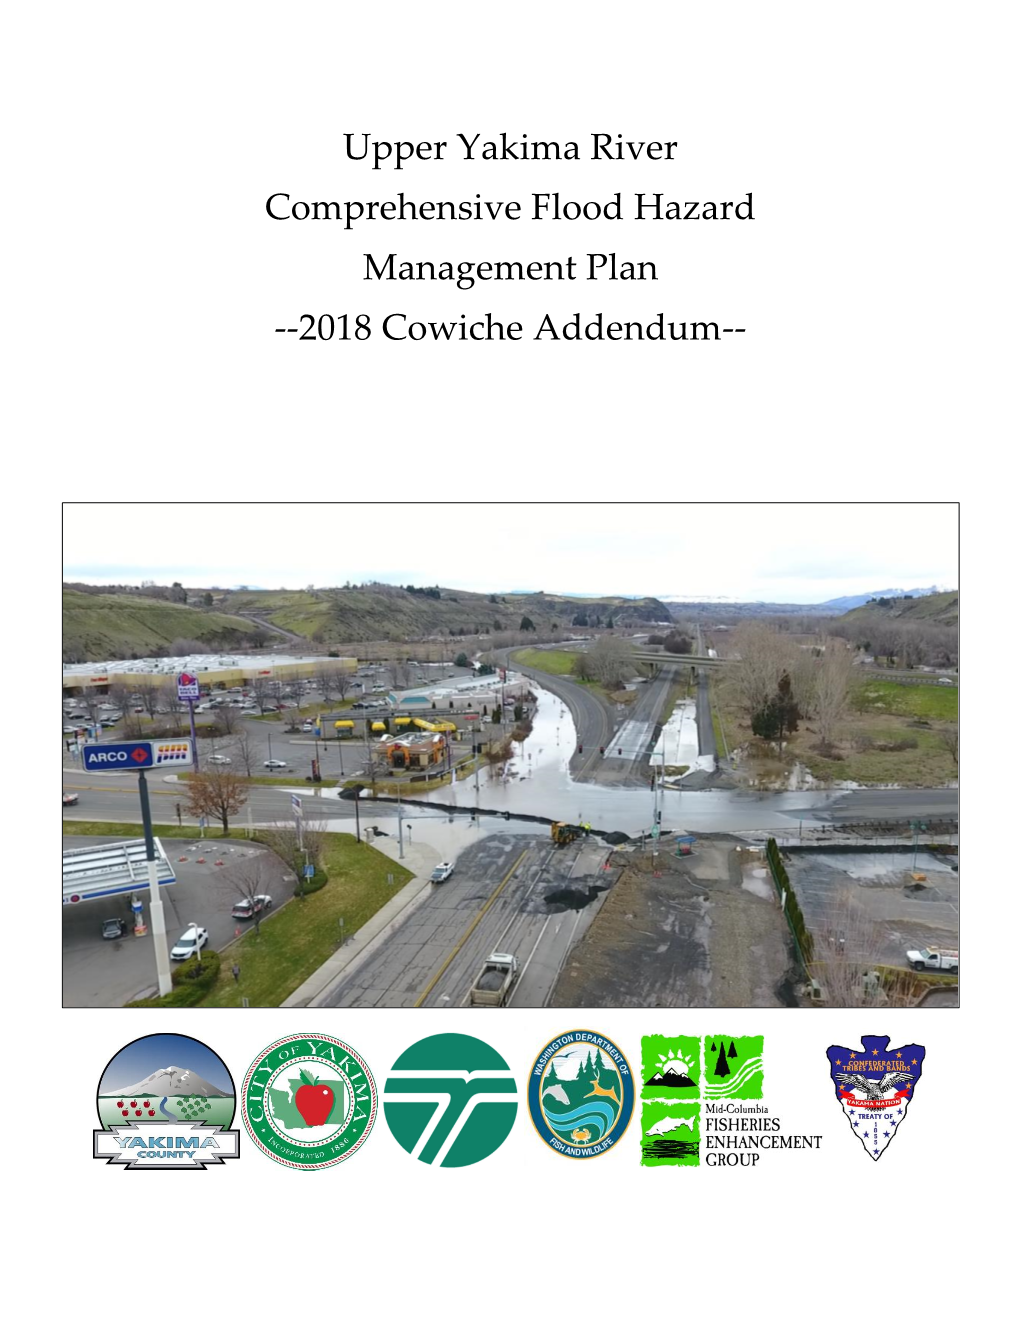 Upper Yakima River Comprehensive Flood Hazard Management Plan --2018 Cowiche Addendum